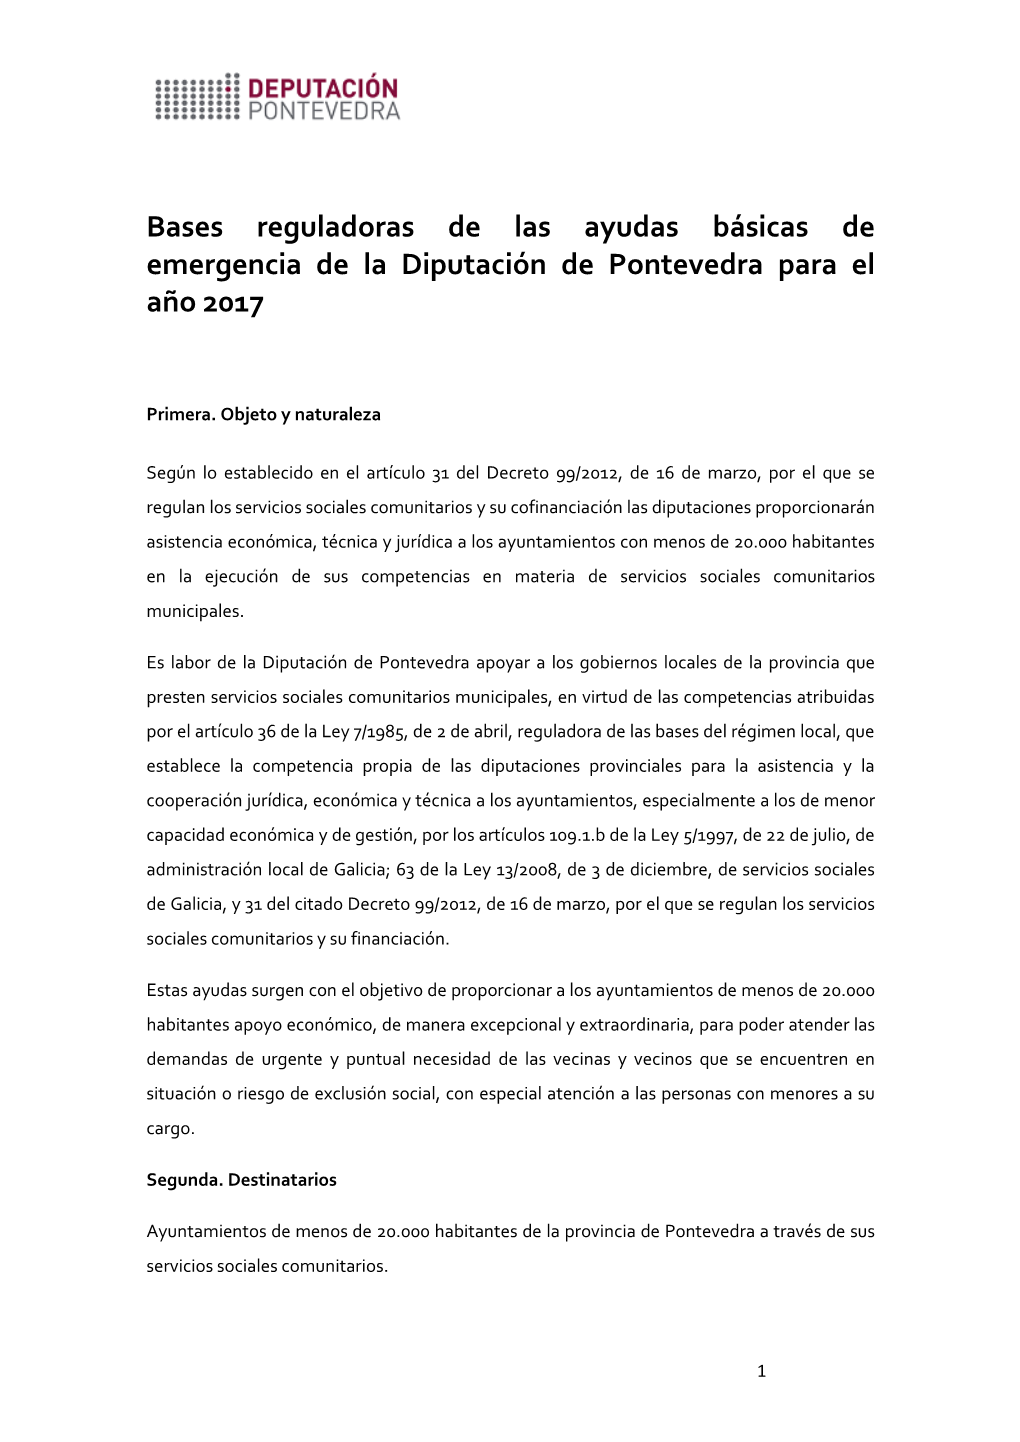 Bases Reguladoras De Las Ayudas Básicas De Emergencia De La Diputación De Pontevedra Para El Año 2017